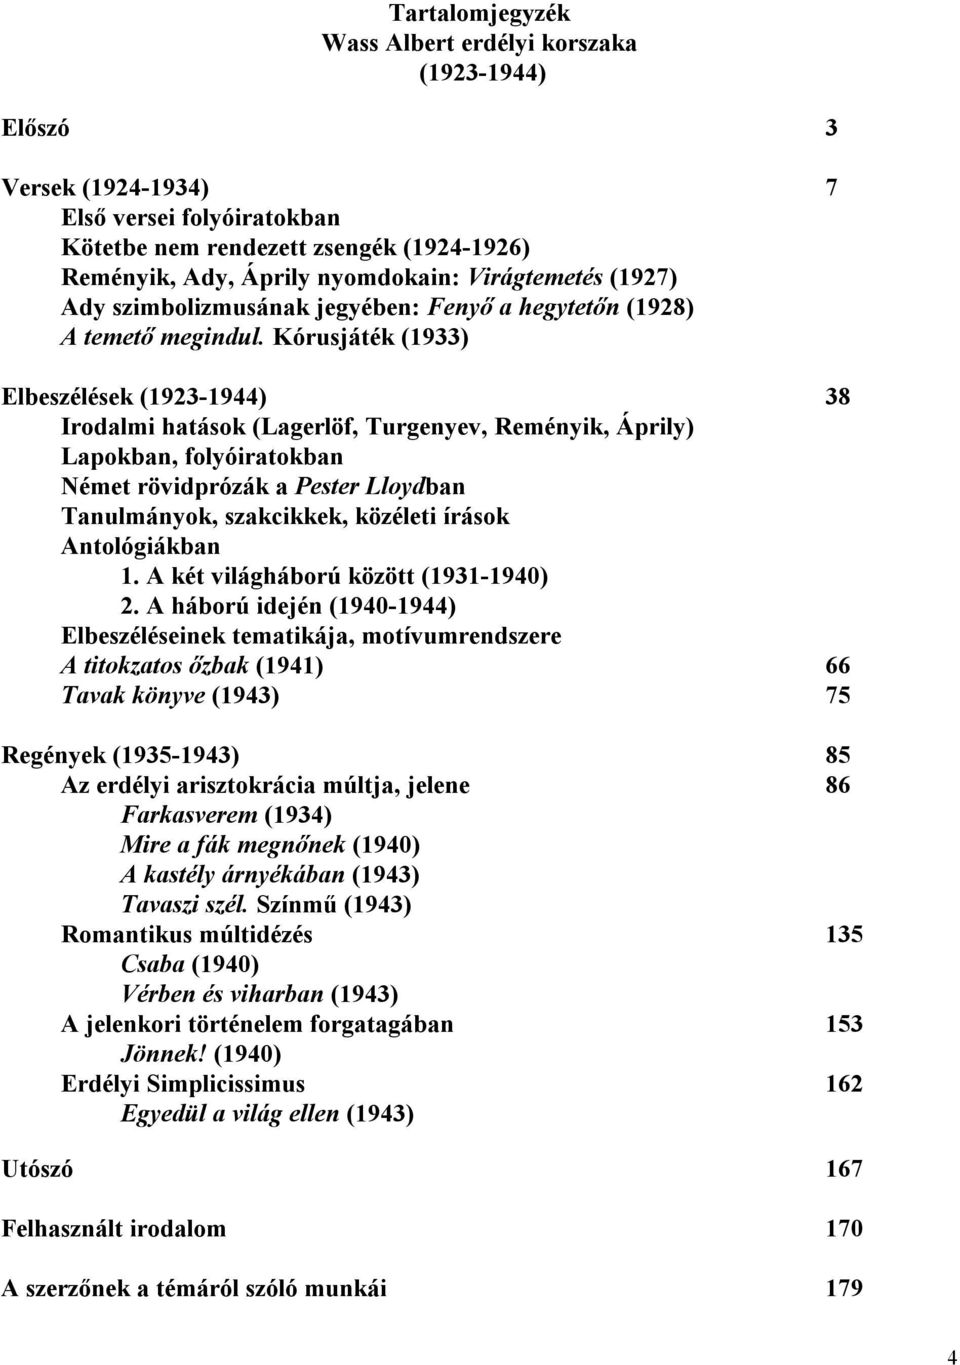 Kórusjáték (1933) Elbeszélések (1923-1944) 38 Irodalmi hatások (Lagerlöf, Turgenyev, Reményik, Áprily) Lapokban, folyóiratokban Német rövidprózák a Pester Lloydban Tanulmányok, szakcikkek, közéleti